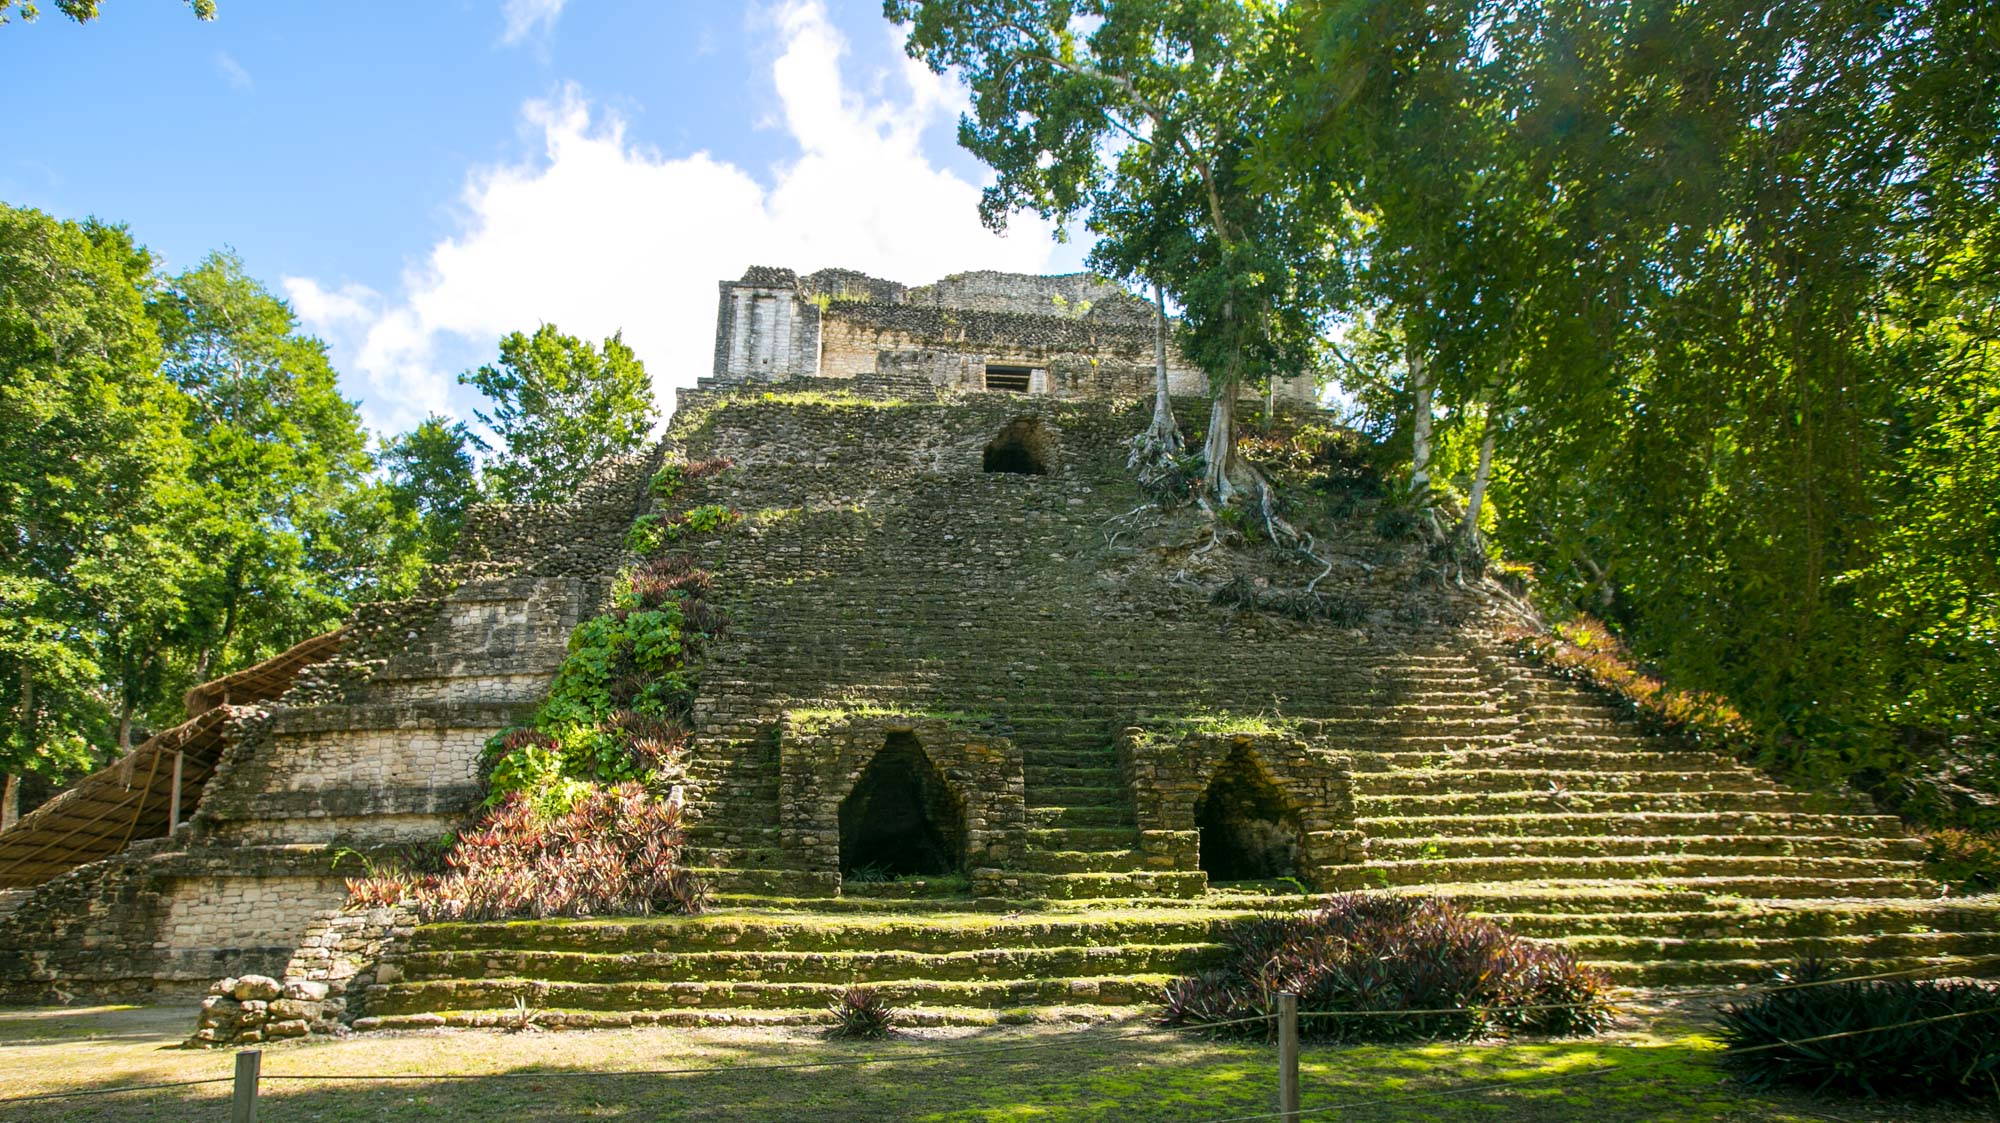 Edificio 2 at Mayan ruins of Dzibanche in Mexico